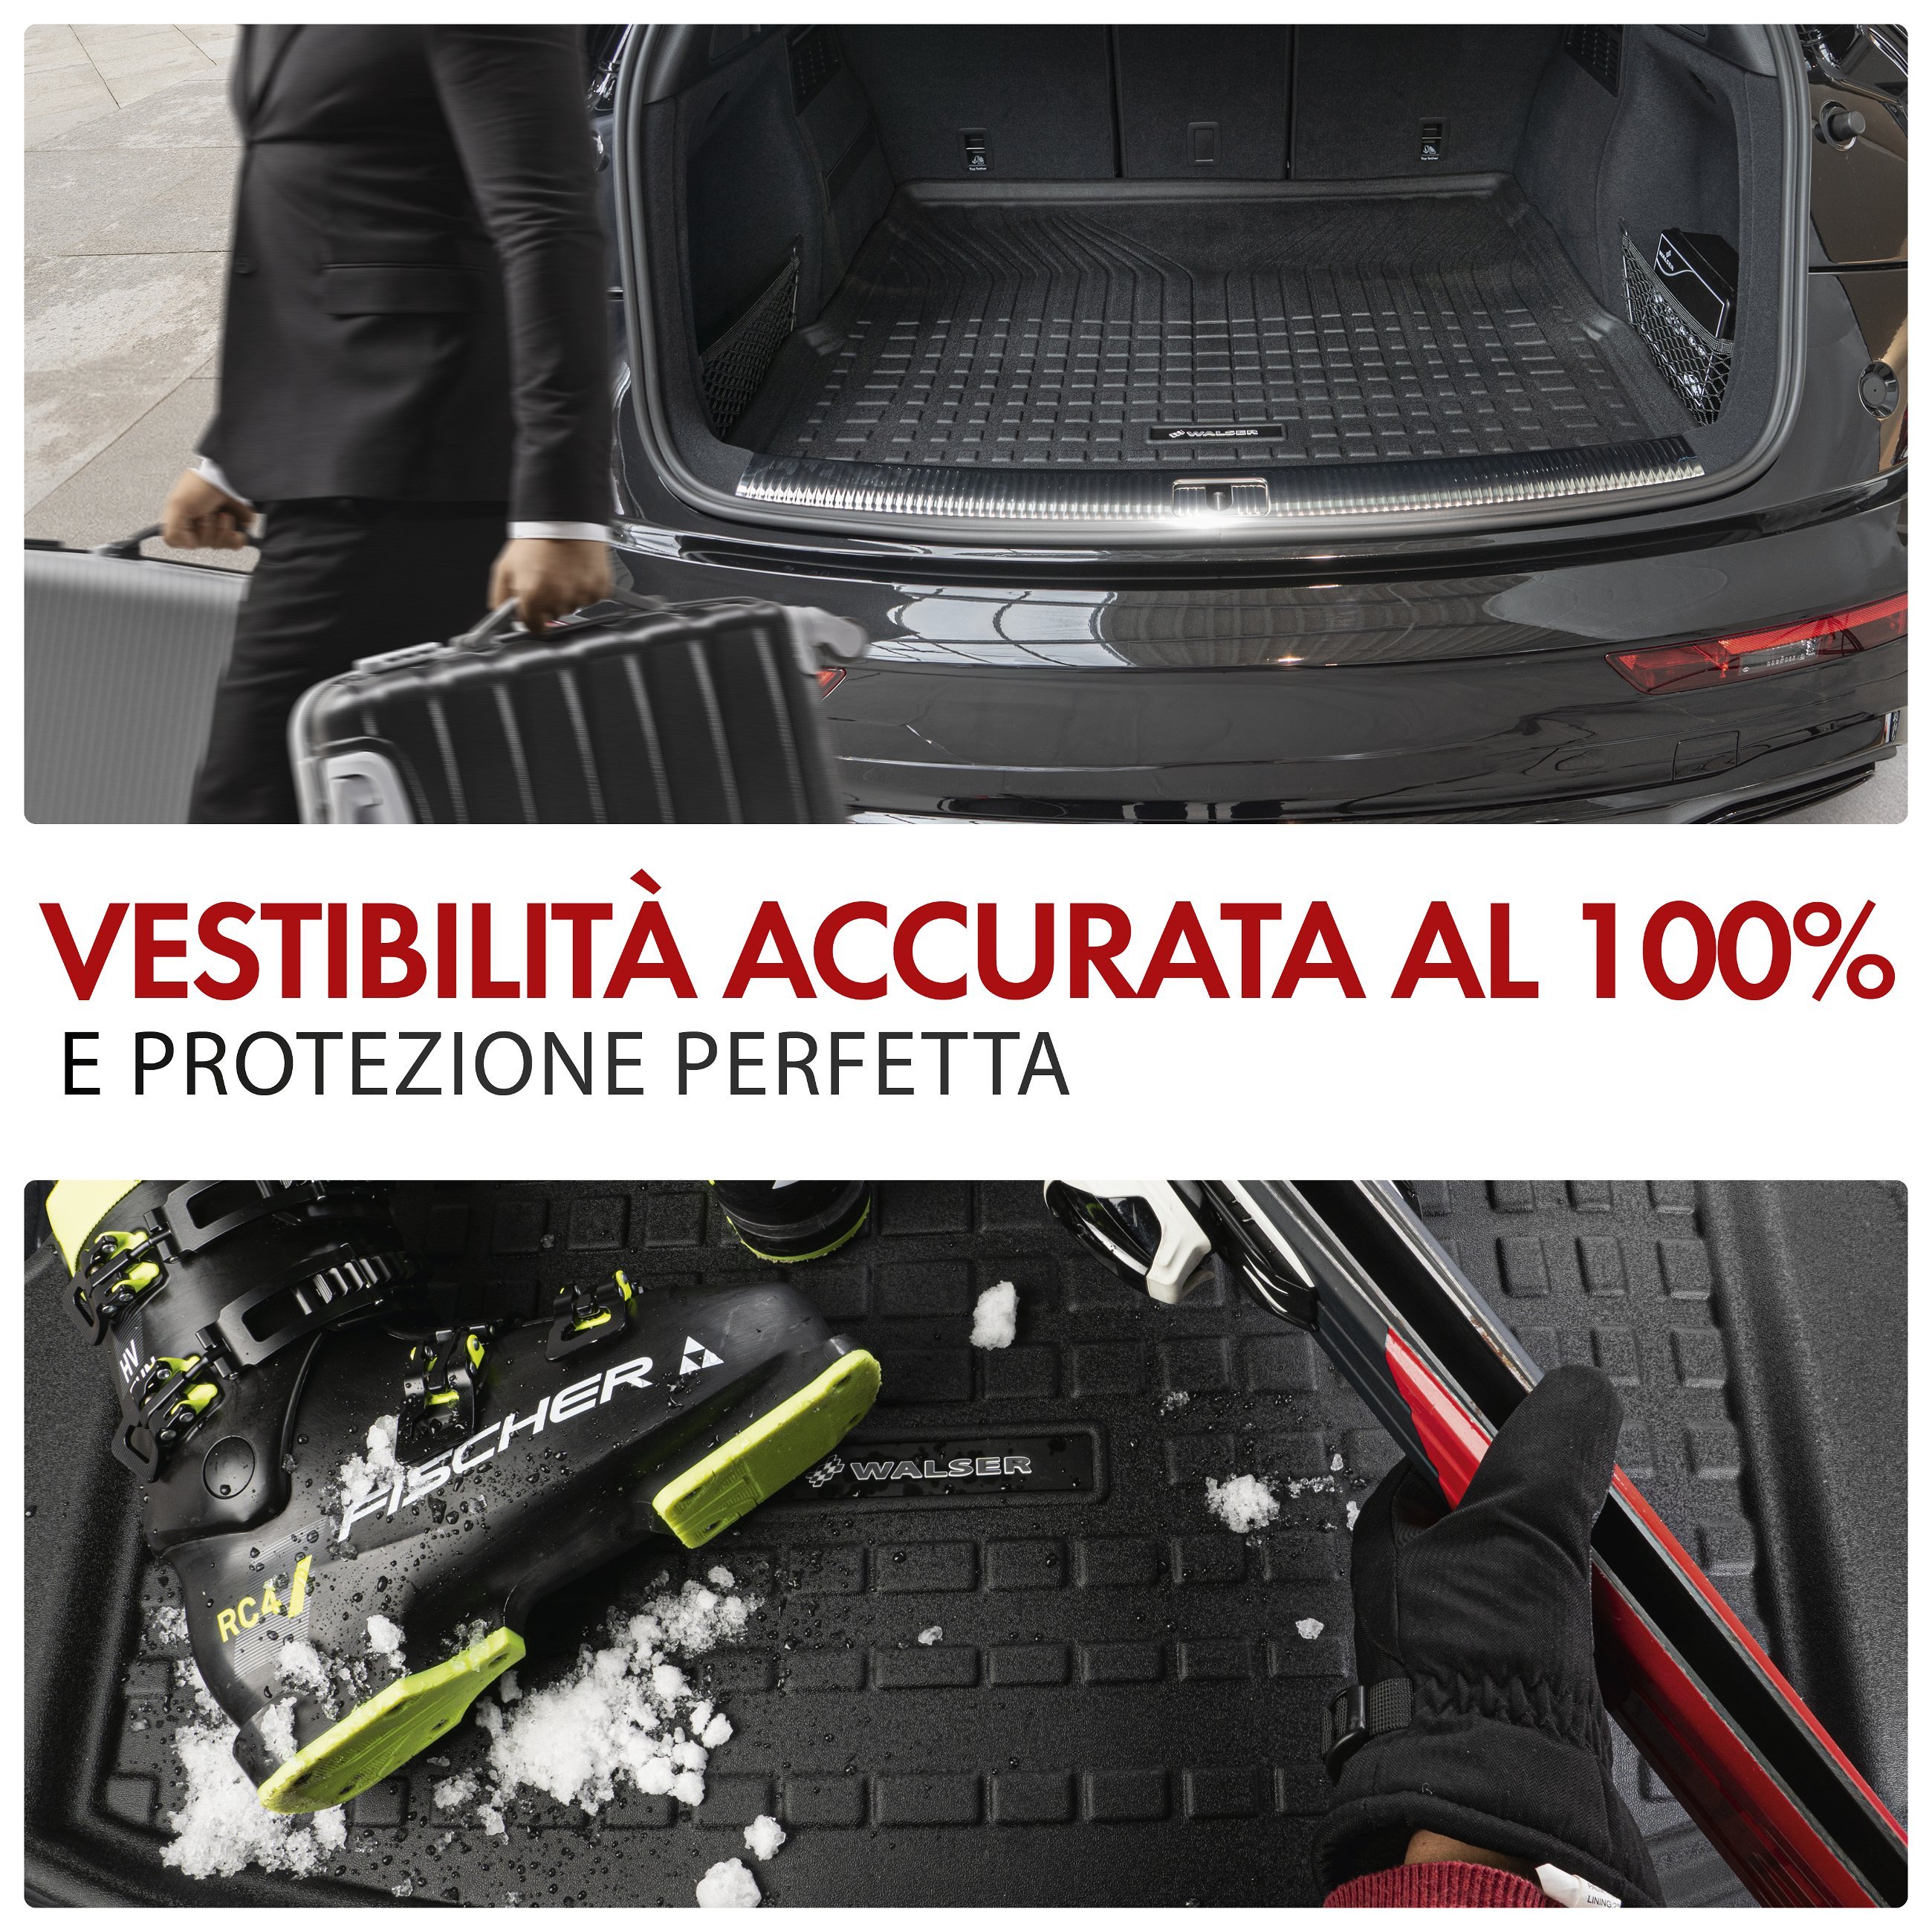 Premium Vasca baule Roadmaster per BMW X1 (F48) 11/2014-Oggi